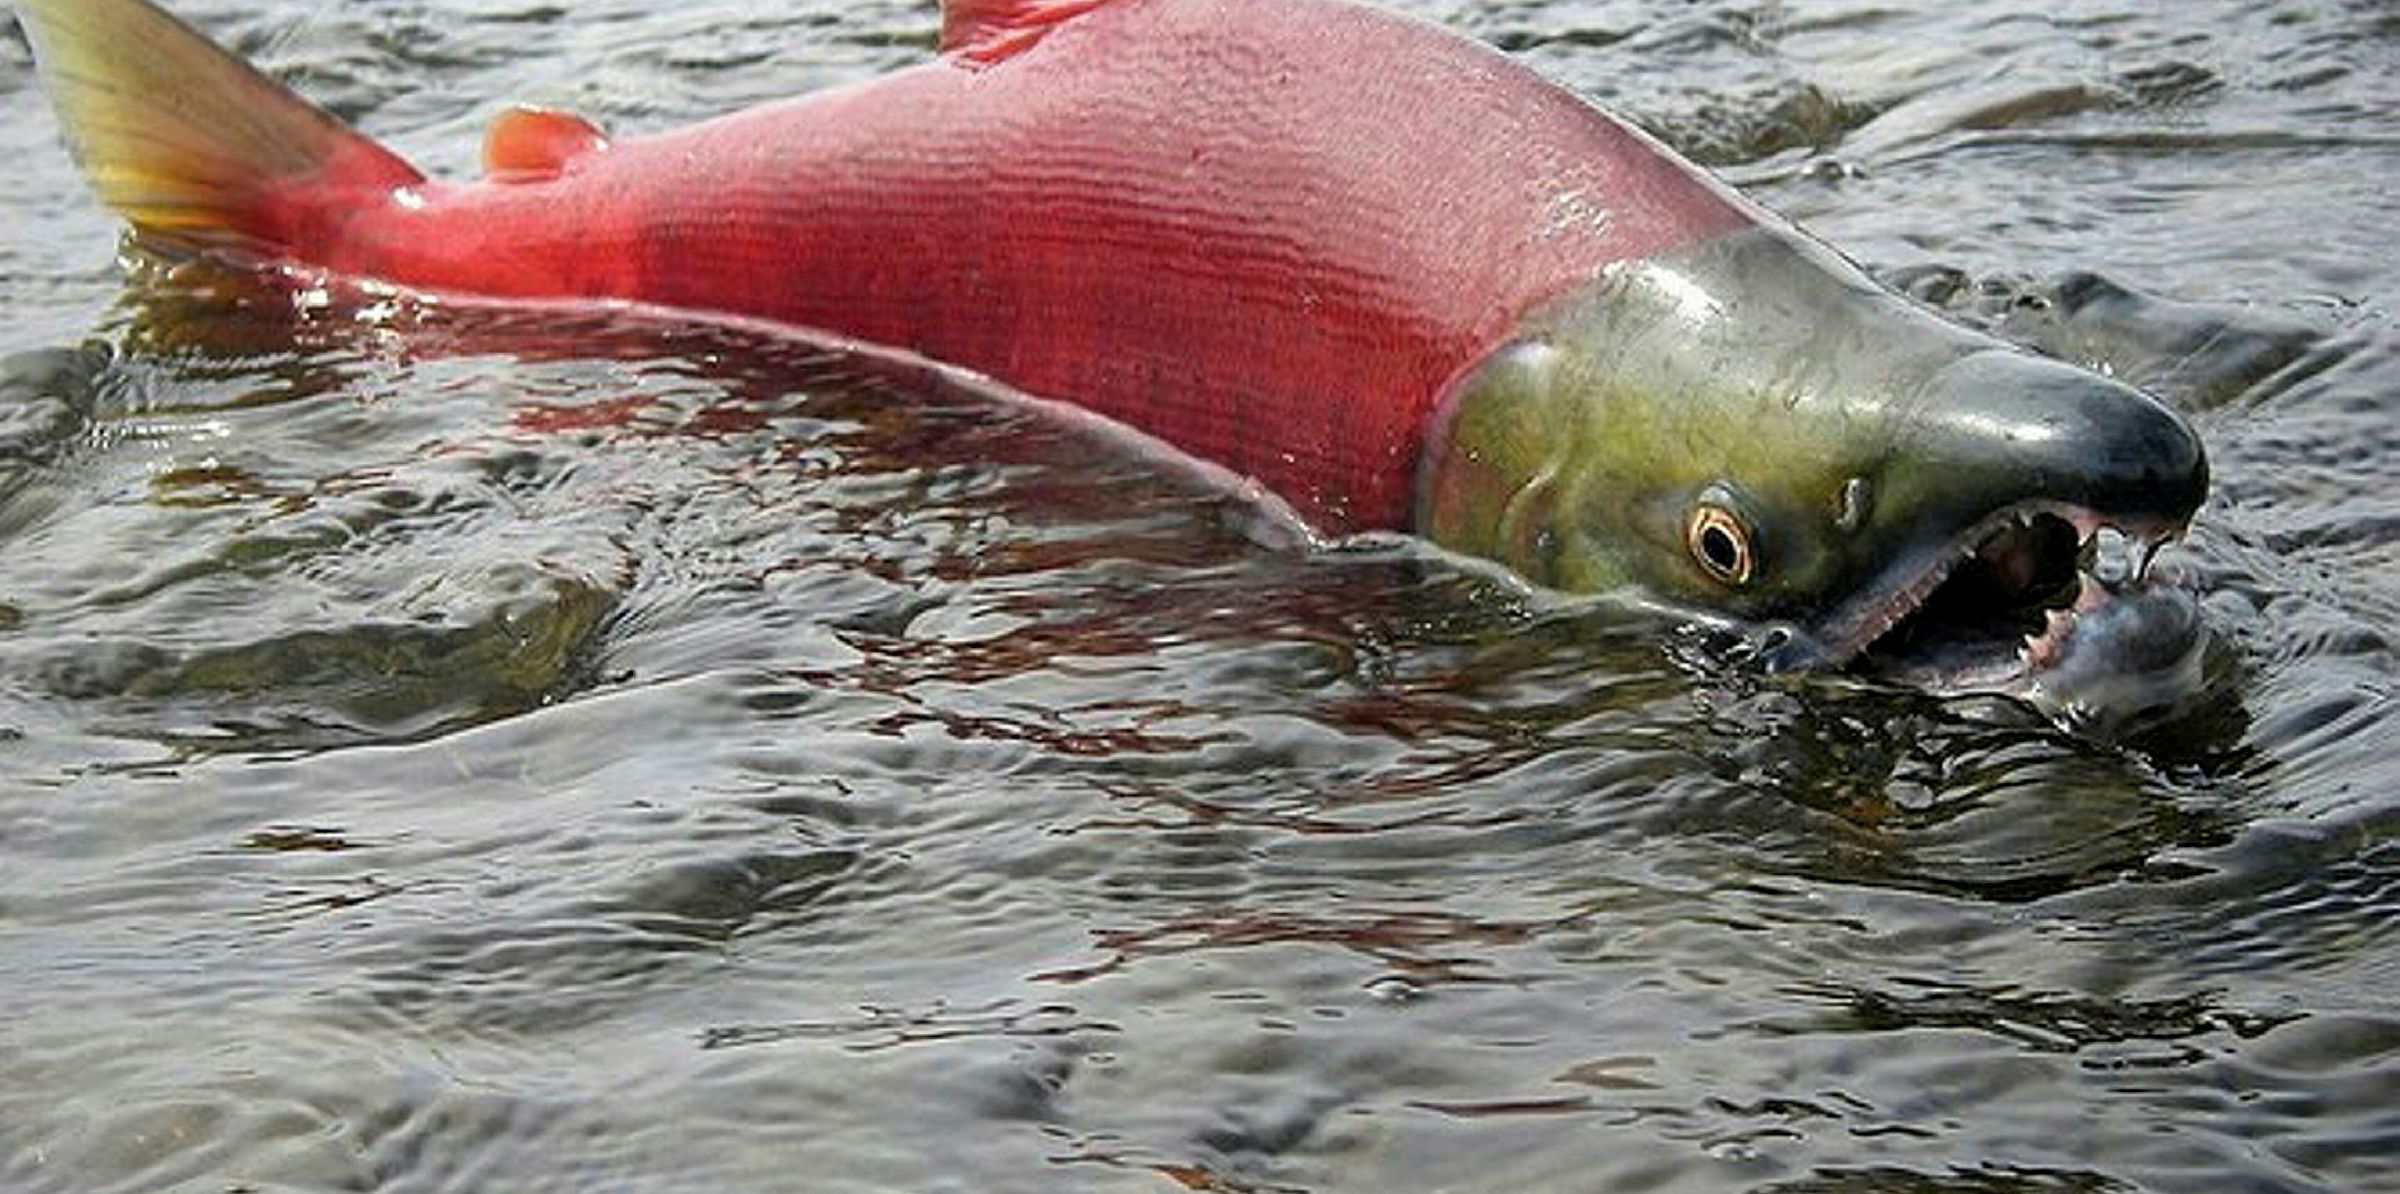 Alaska salmon LIVE UPDATES An overall slow season, sockeye and pink